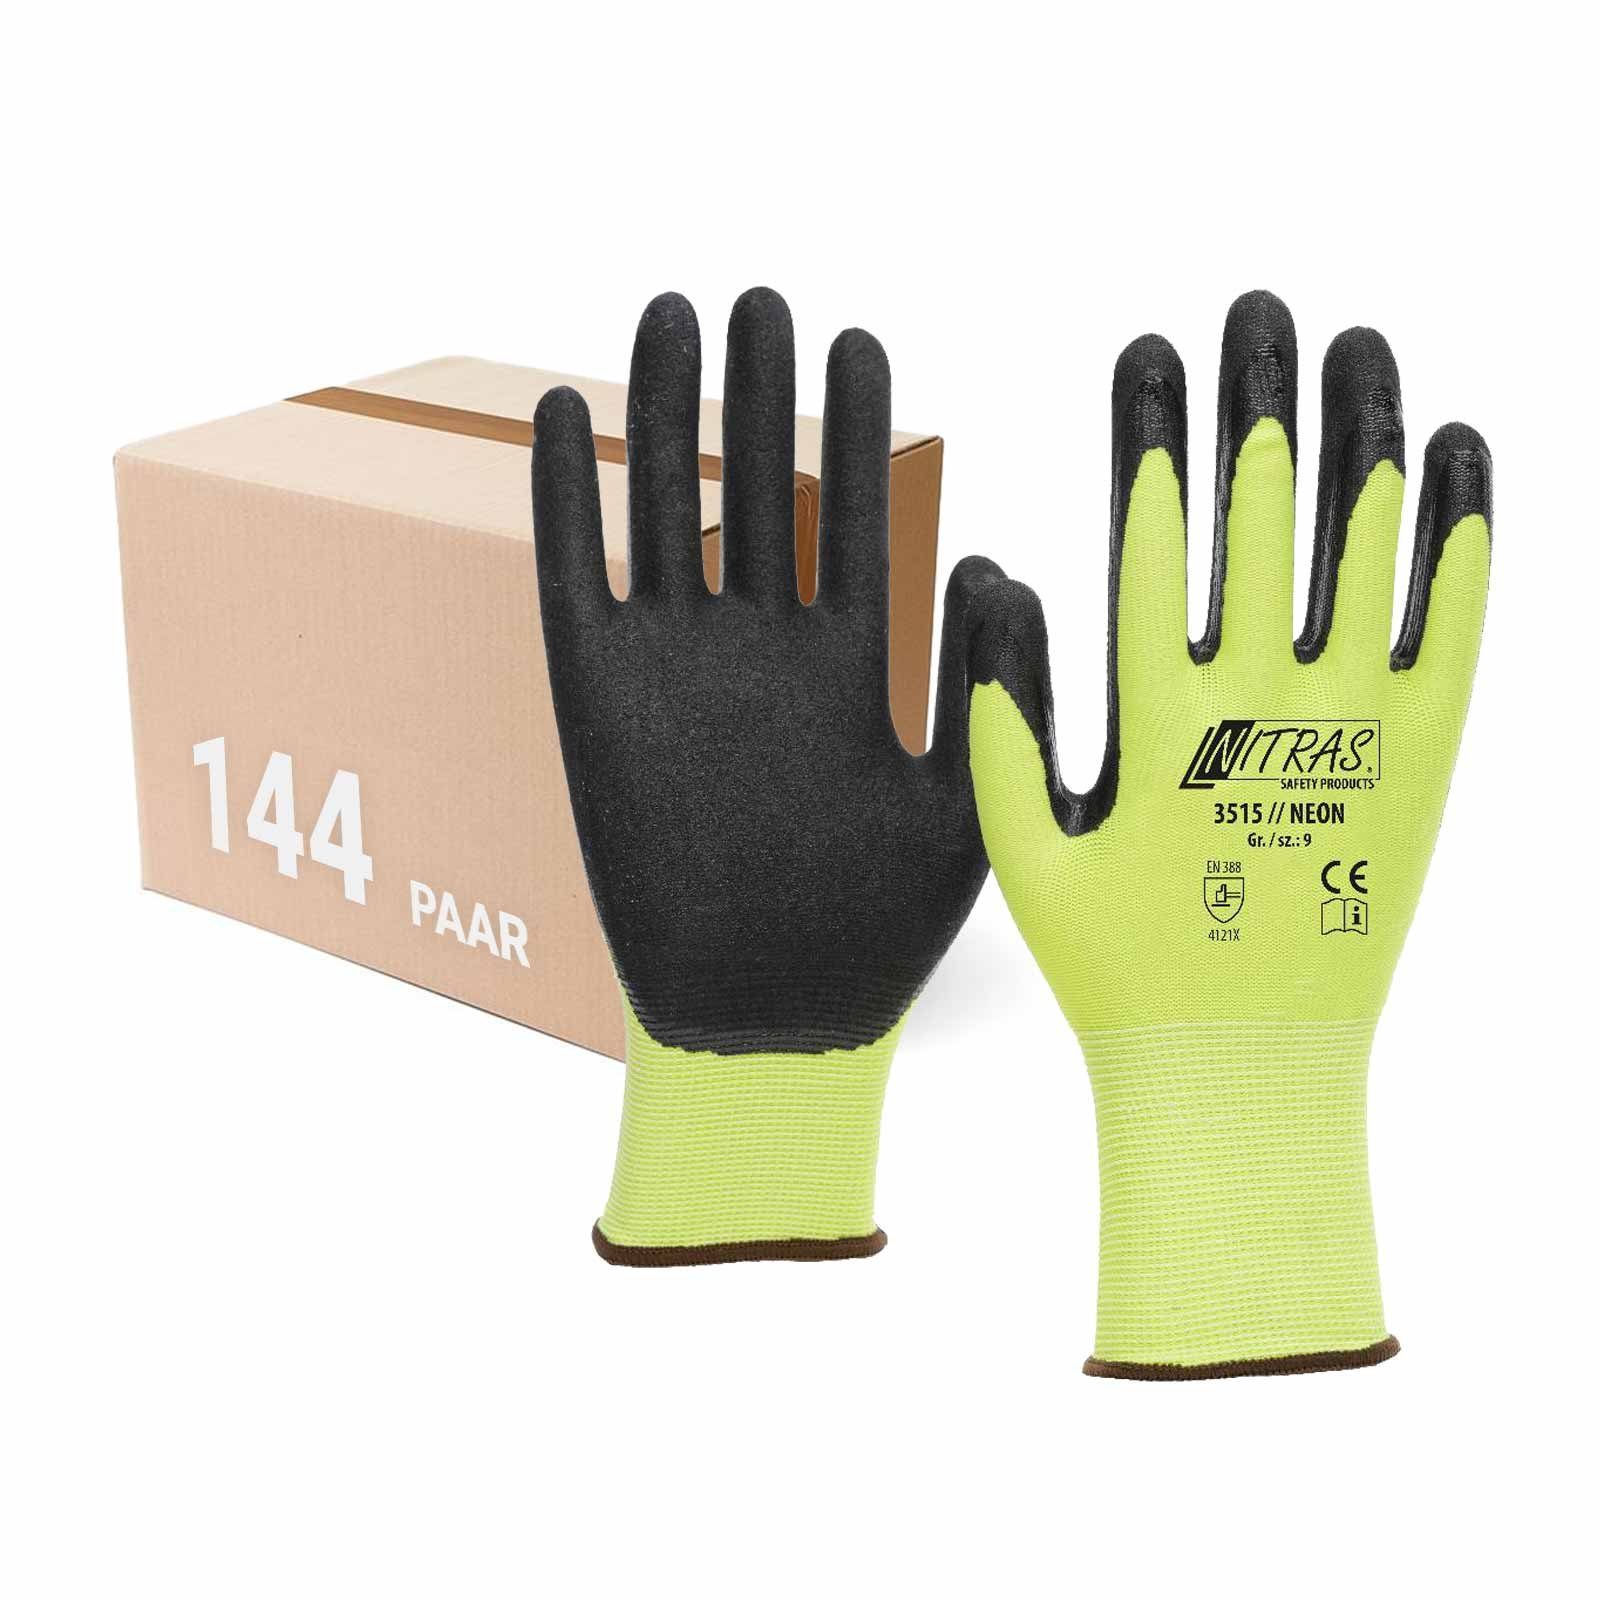 - VPE Nitrilbeschichtung Neon Strickhandschuh mit Nitril-Handschuhe 144 (Spar-Set) Nitras 3515 Paar NITRAS